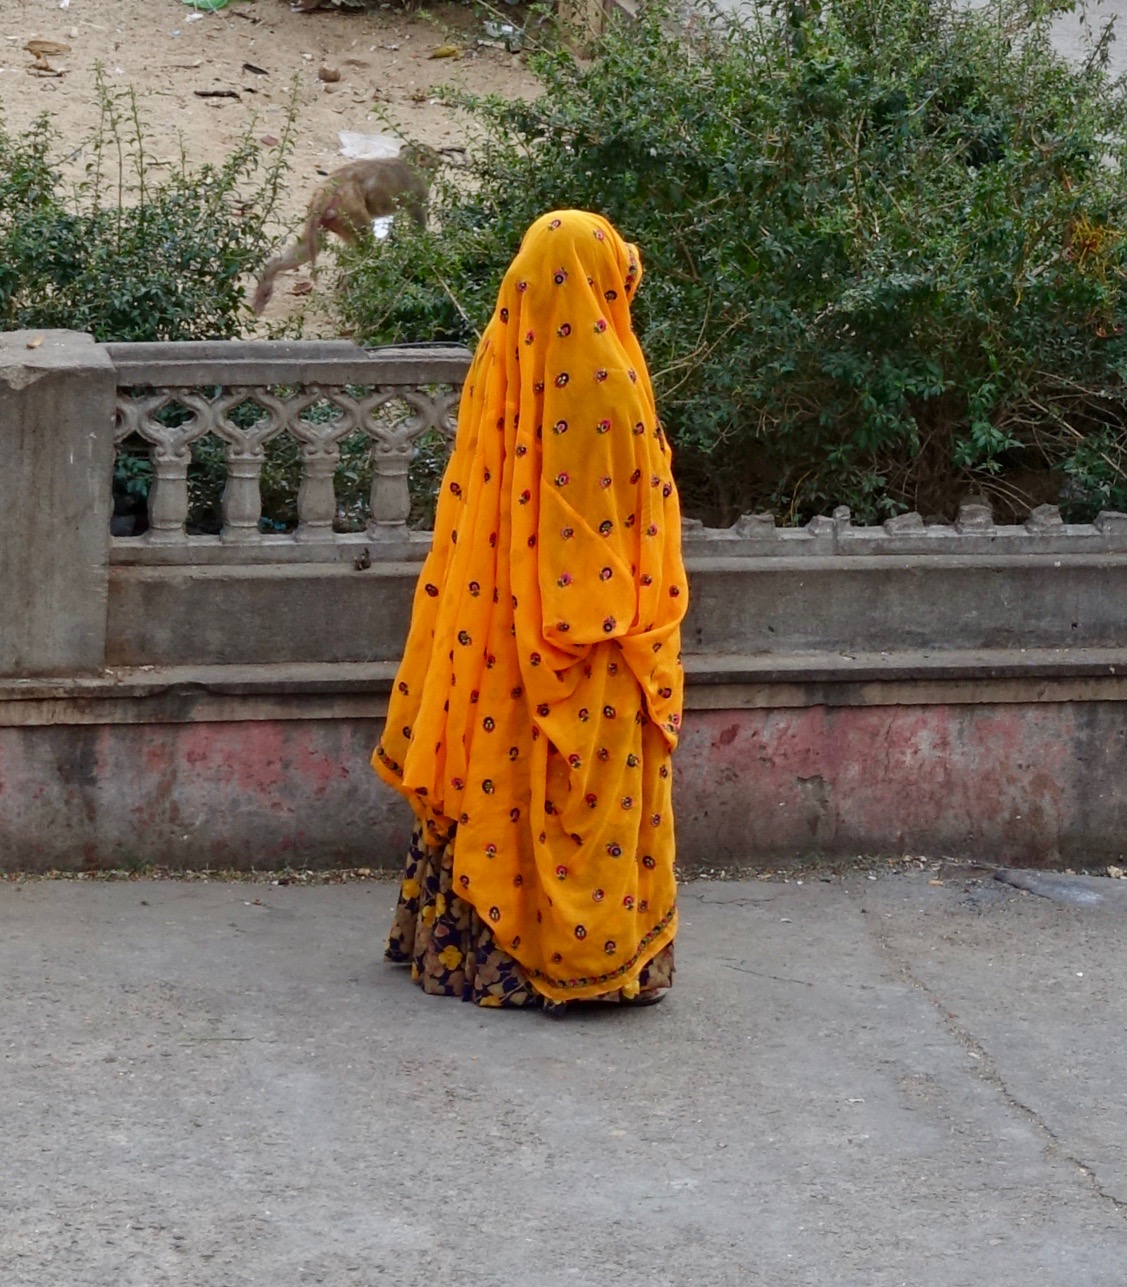 Voilà une belle dame avec un beau sari, voile baissé sur le visage. A l'arrêt, on ne sait pas où se trouve l'avant et l'arrière.  Il faut attendre qu'elle se mette en mouvement. Bien heureux mari ...